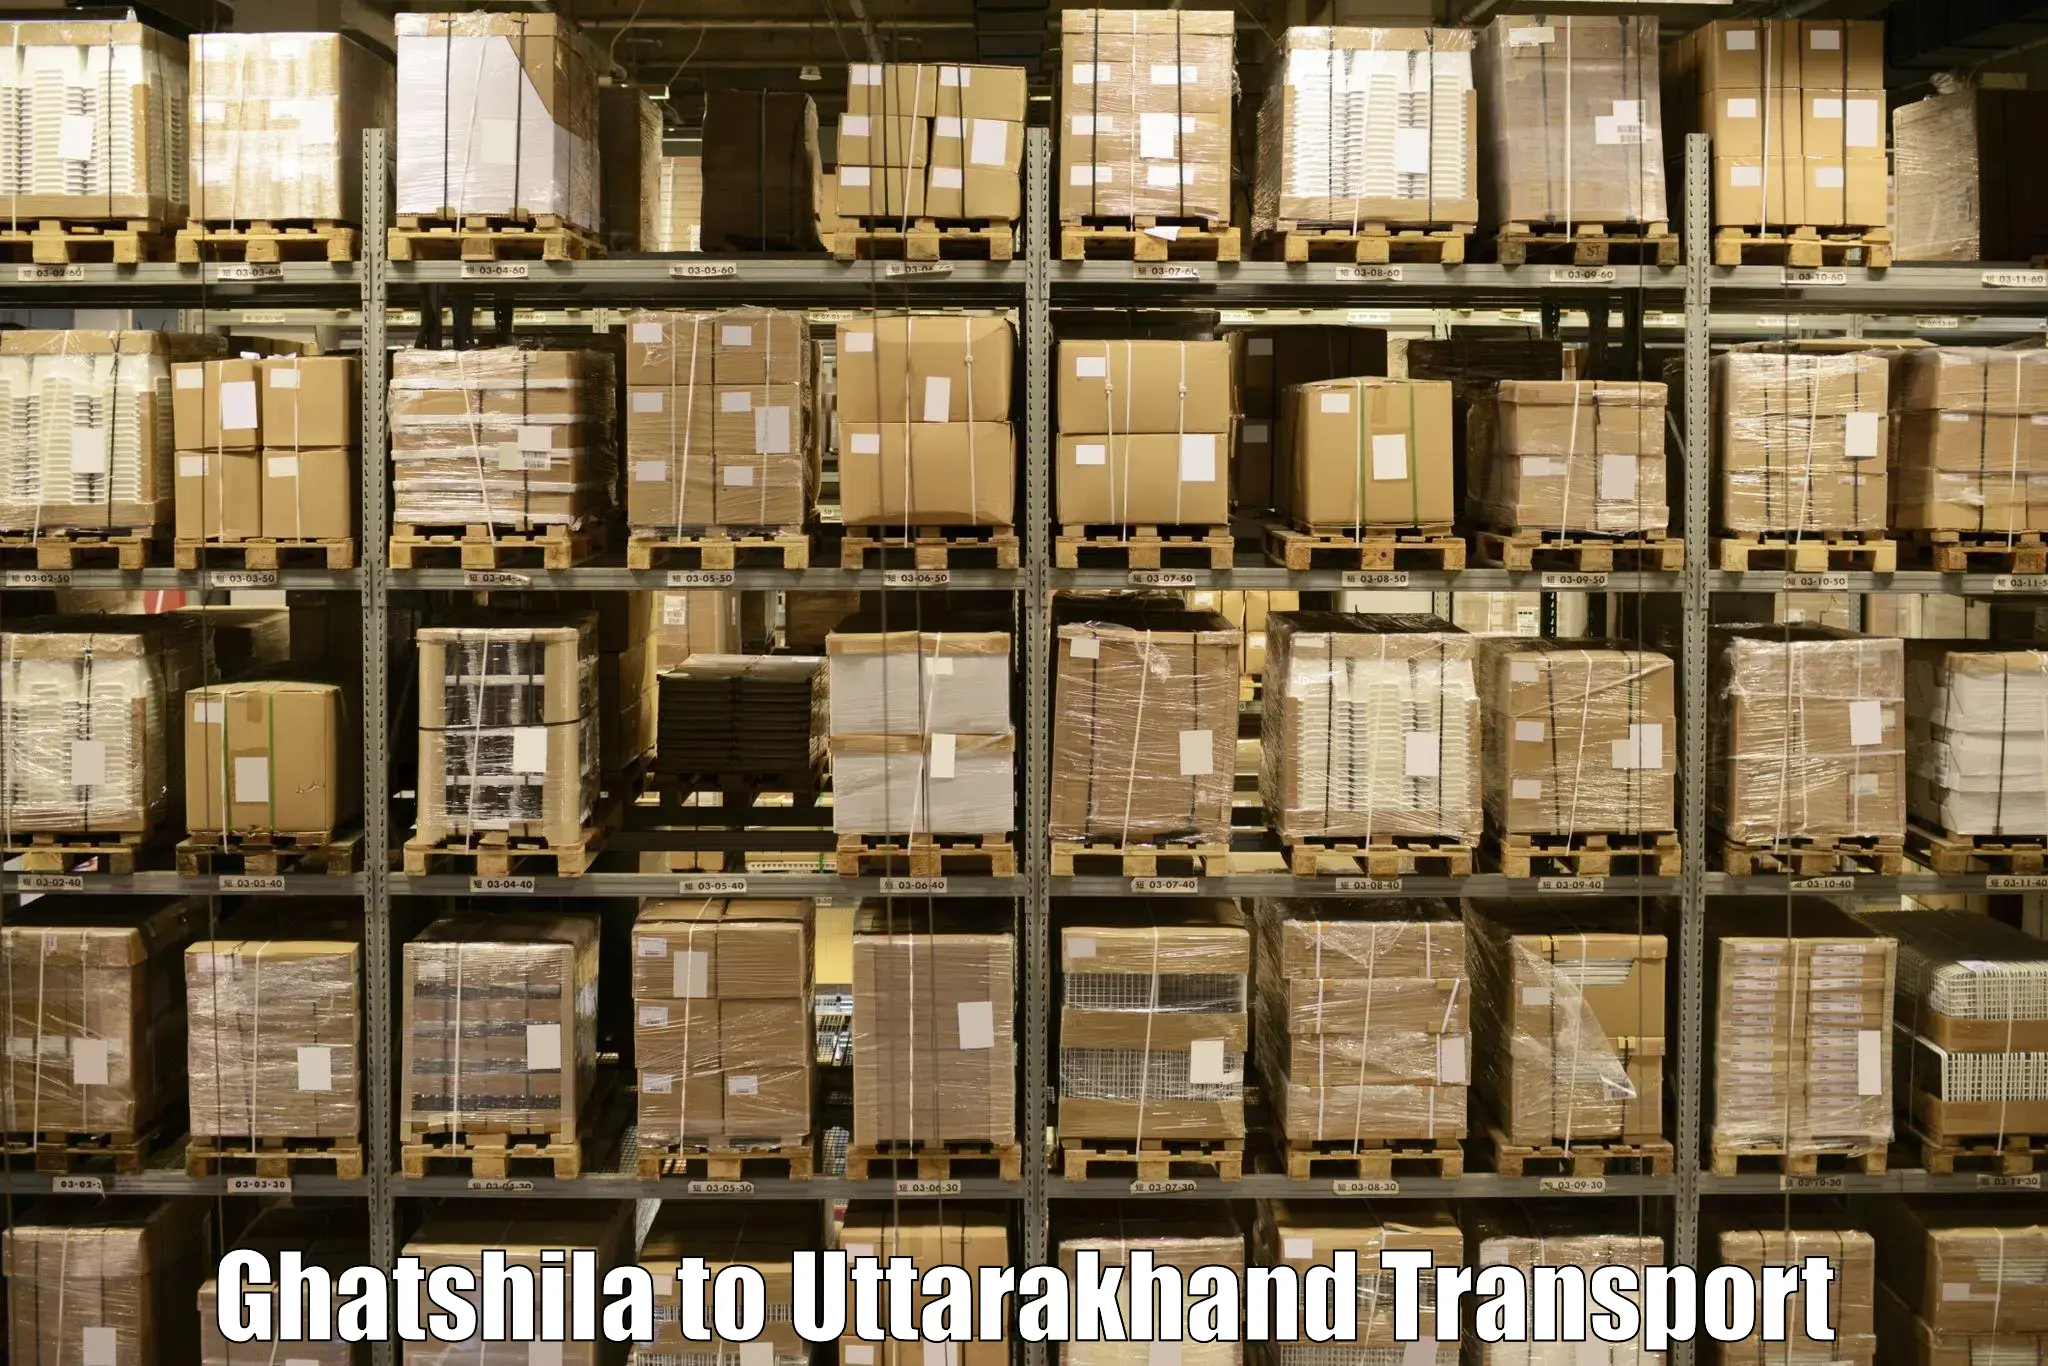 Commercial transport service Ghatshila to Uttarakhand